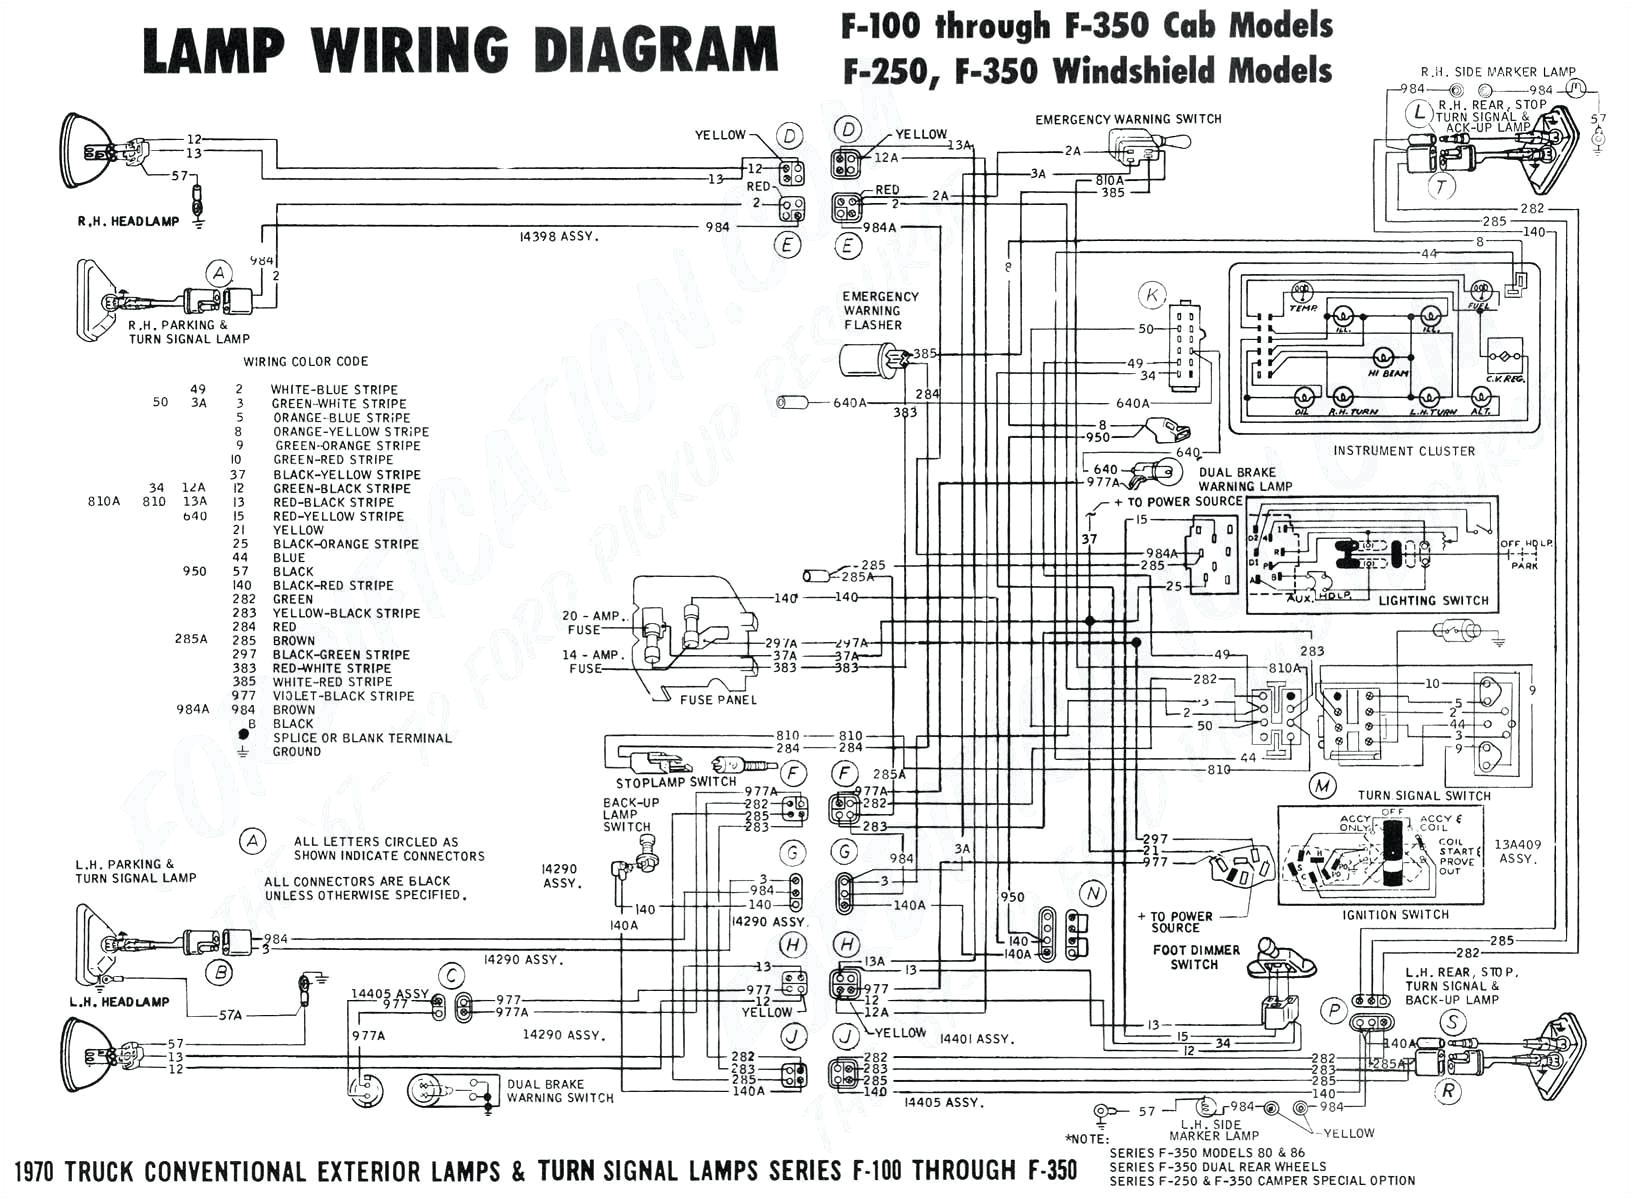 Yamaha Kodiak 400 Wiring Diagram Yamaha Wiring Harness Free Download Wiring Diagram sort